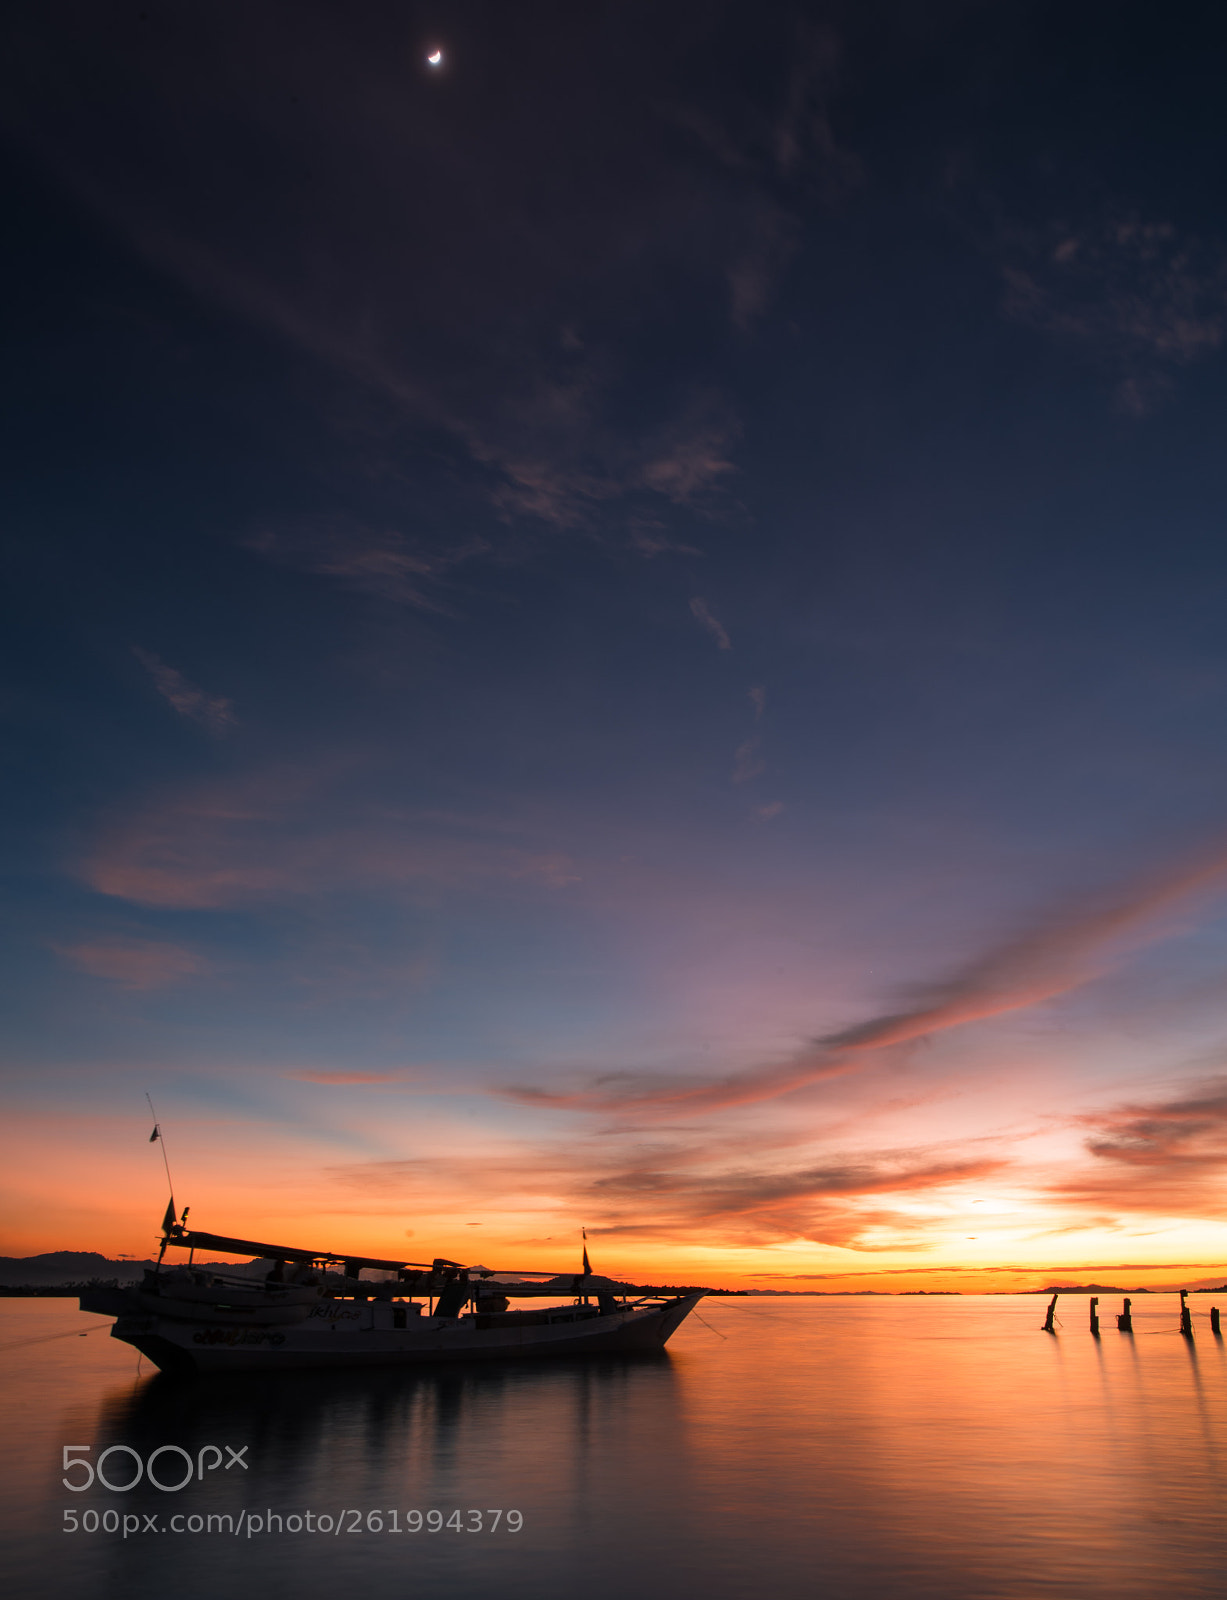 Nikon D750 sample photo. Beautiful sunset photography